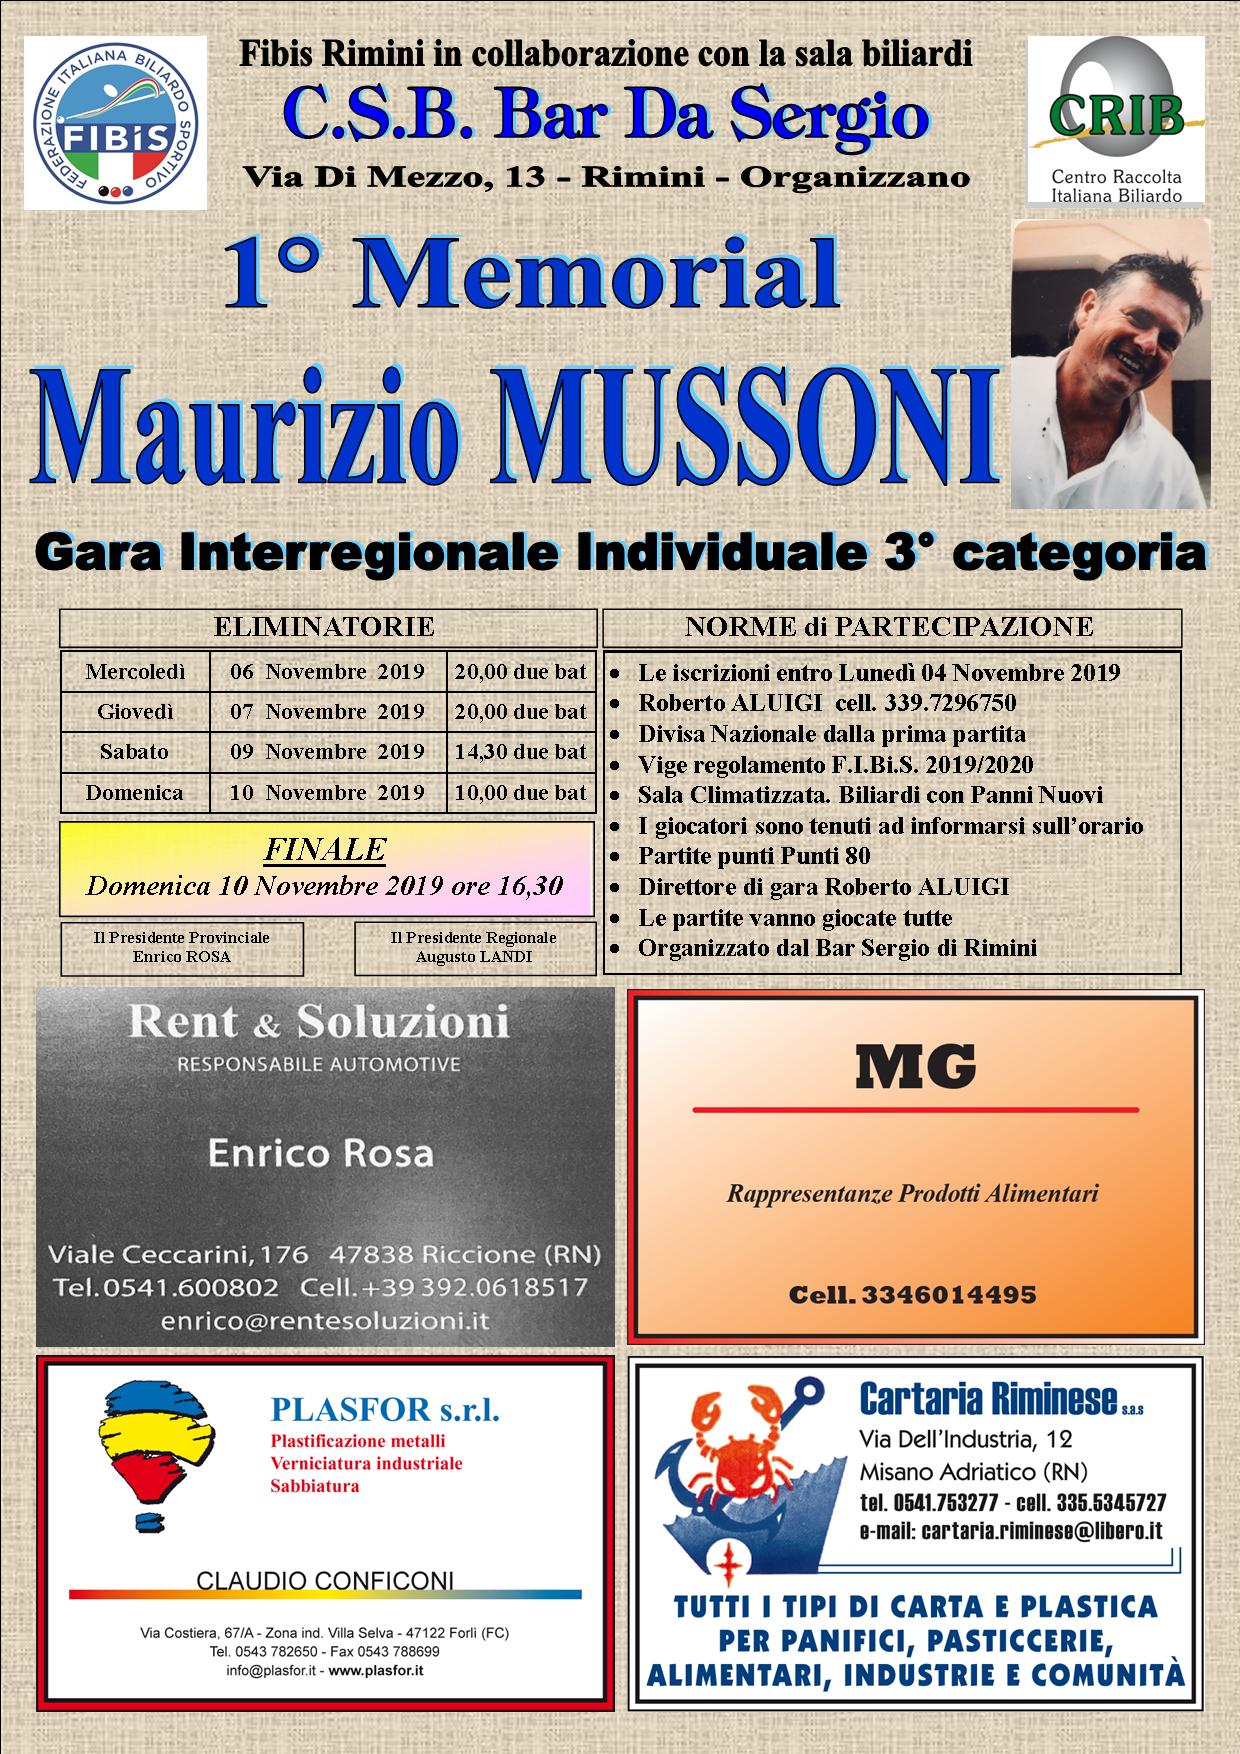 1^ Memorial Mussoni Maurizio - Gara Interregionale Individuale 3^ Cat. (C.S.B. Sergio Rimini)